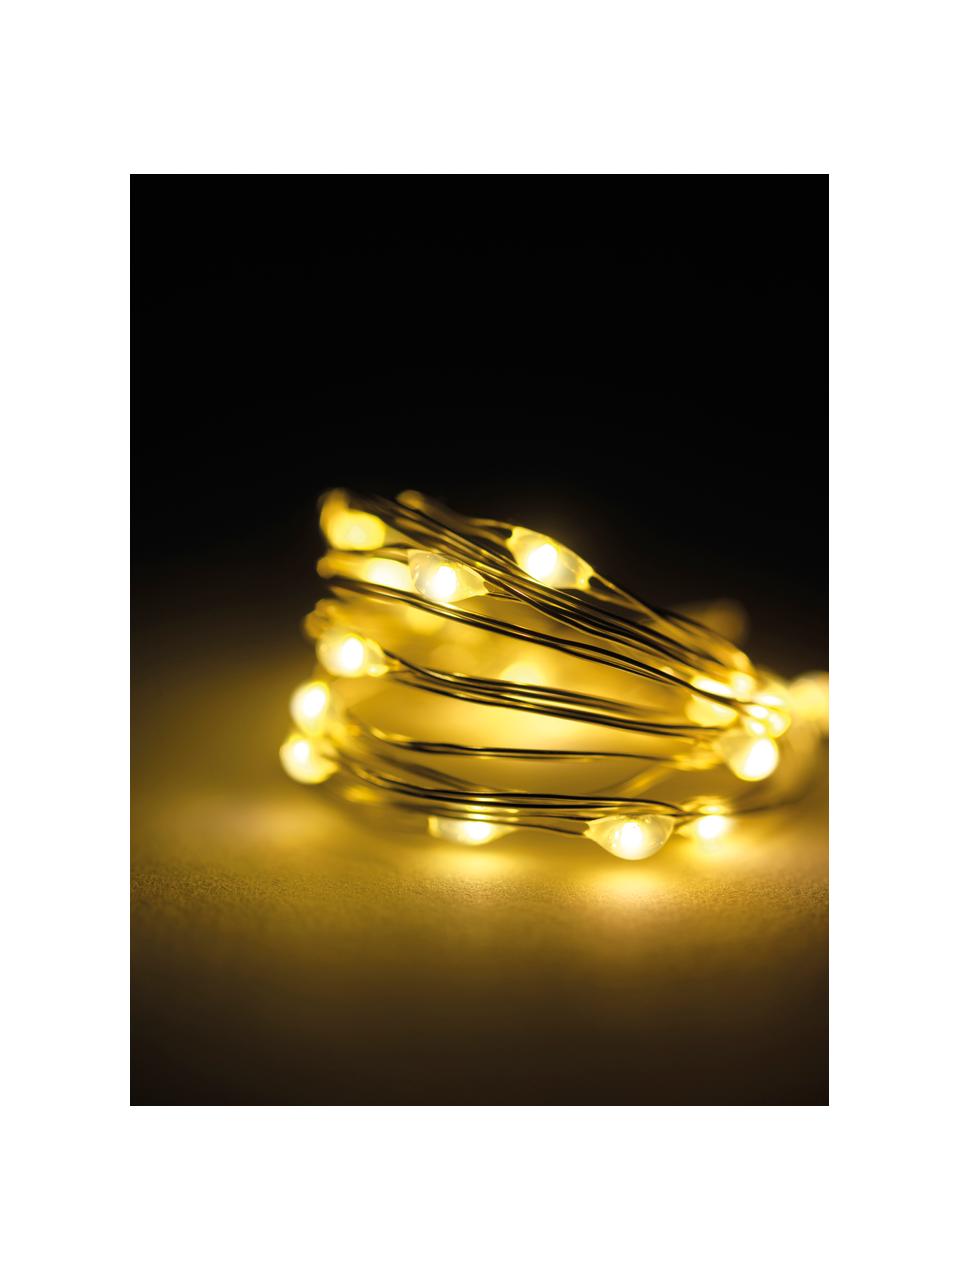 Světelný LED řetěz Wiry, 195 cm, Umělá hmota, kov, Transparentní, D 195 cm